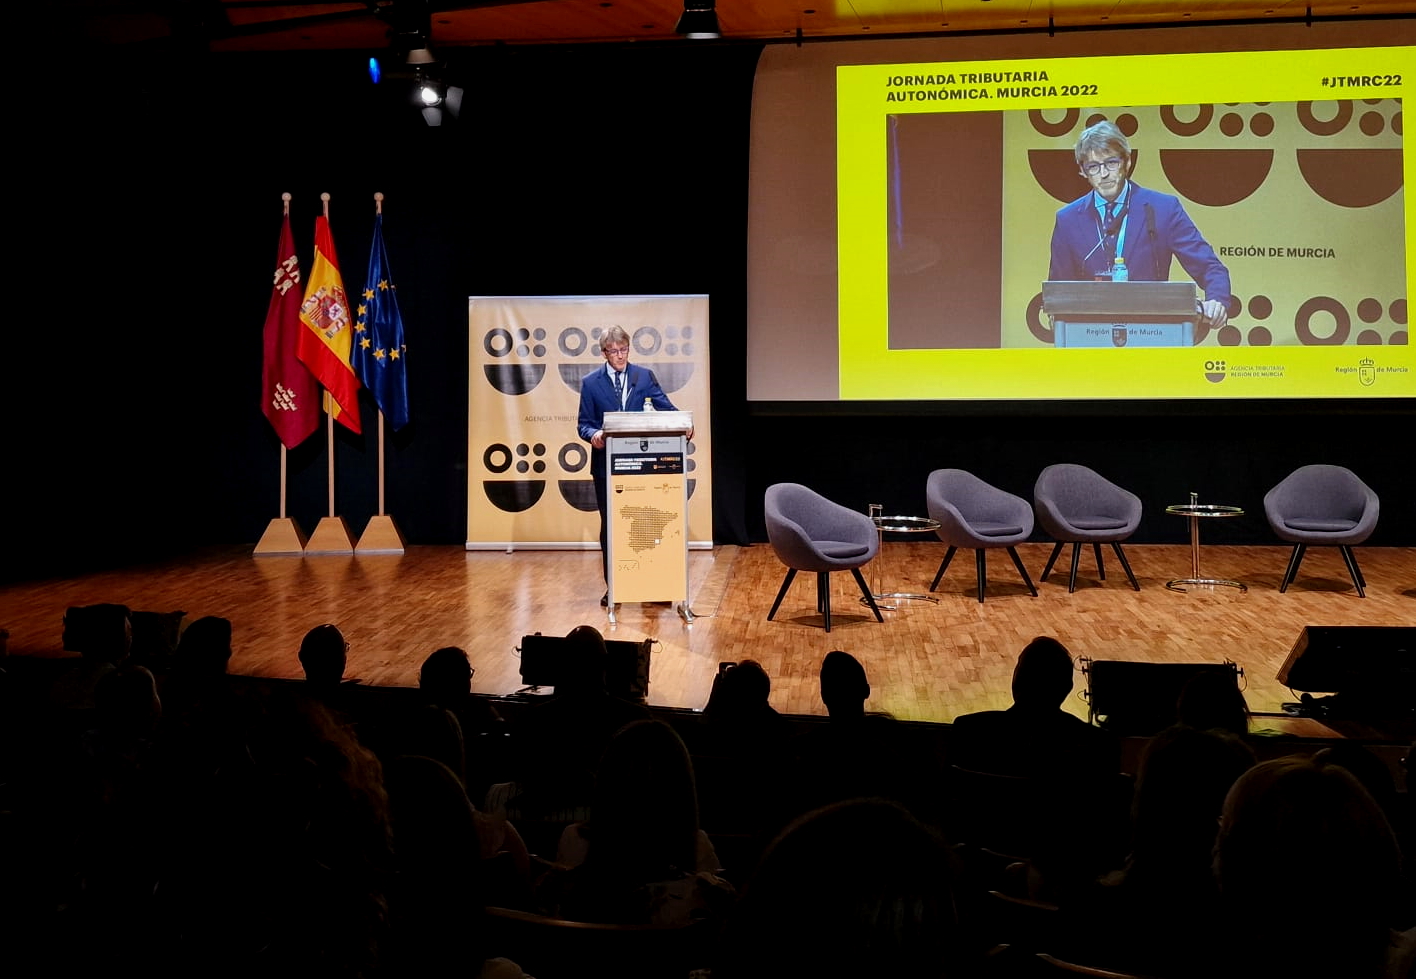 El consejero de Economía, Hacienda y Administración Digital, Luis Alberto Marín, inaugura la Jornada Tributaria Autonómica, que ha reunido en Murcia a responsables de tributos de toda España